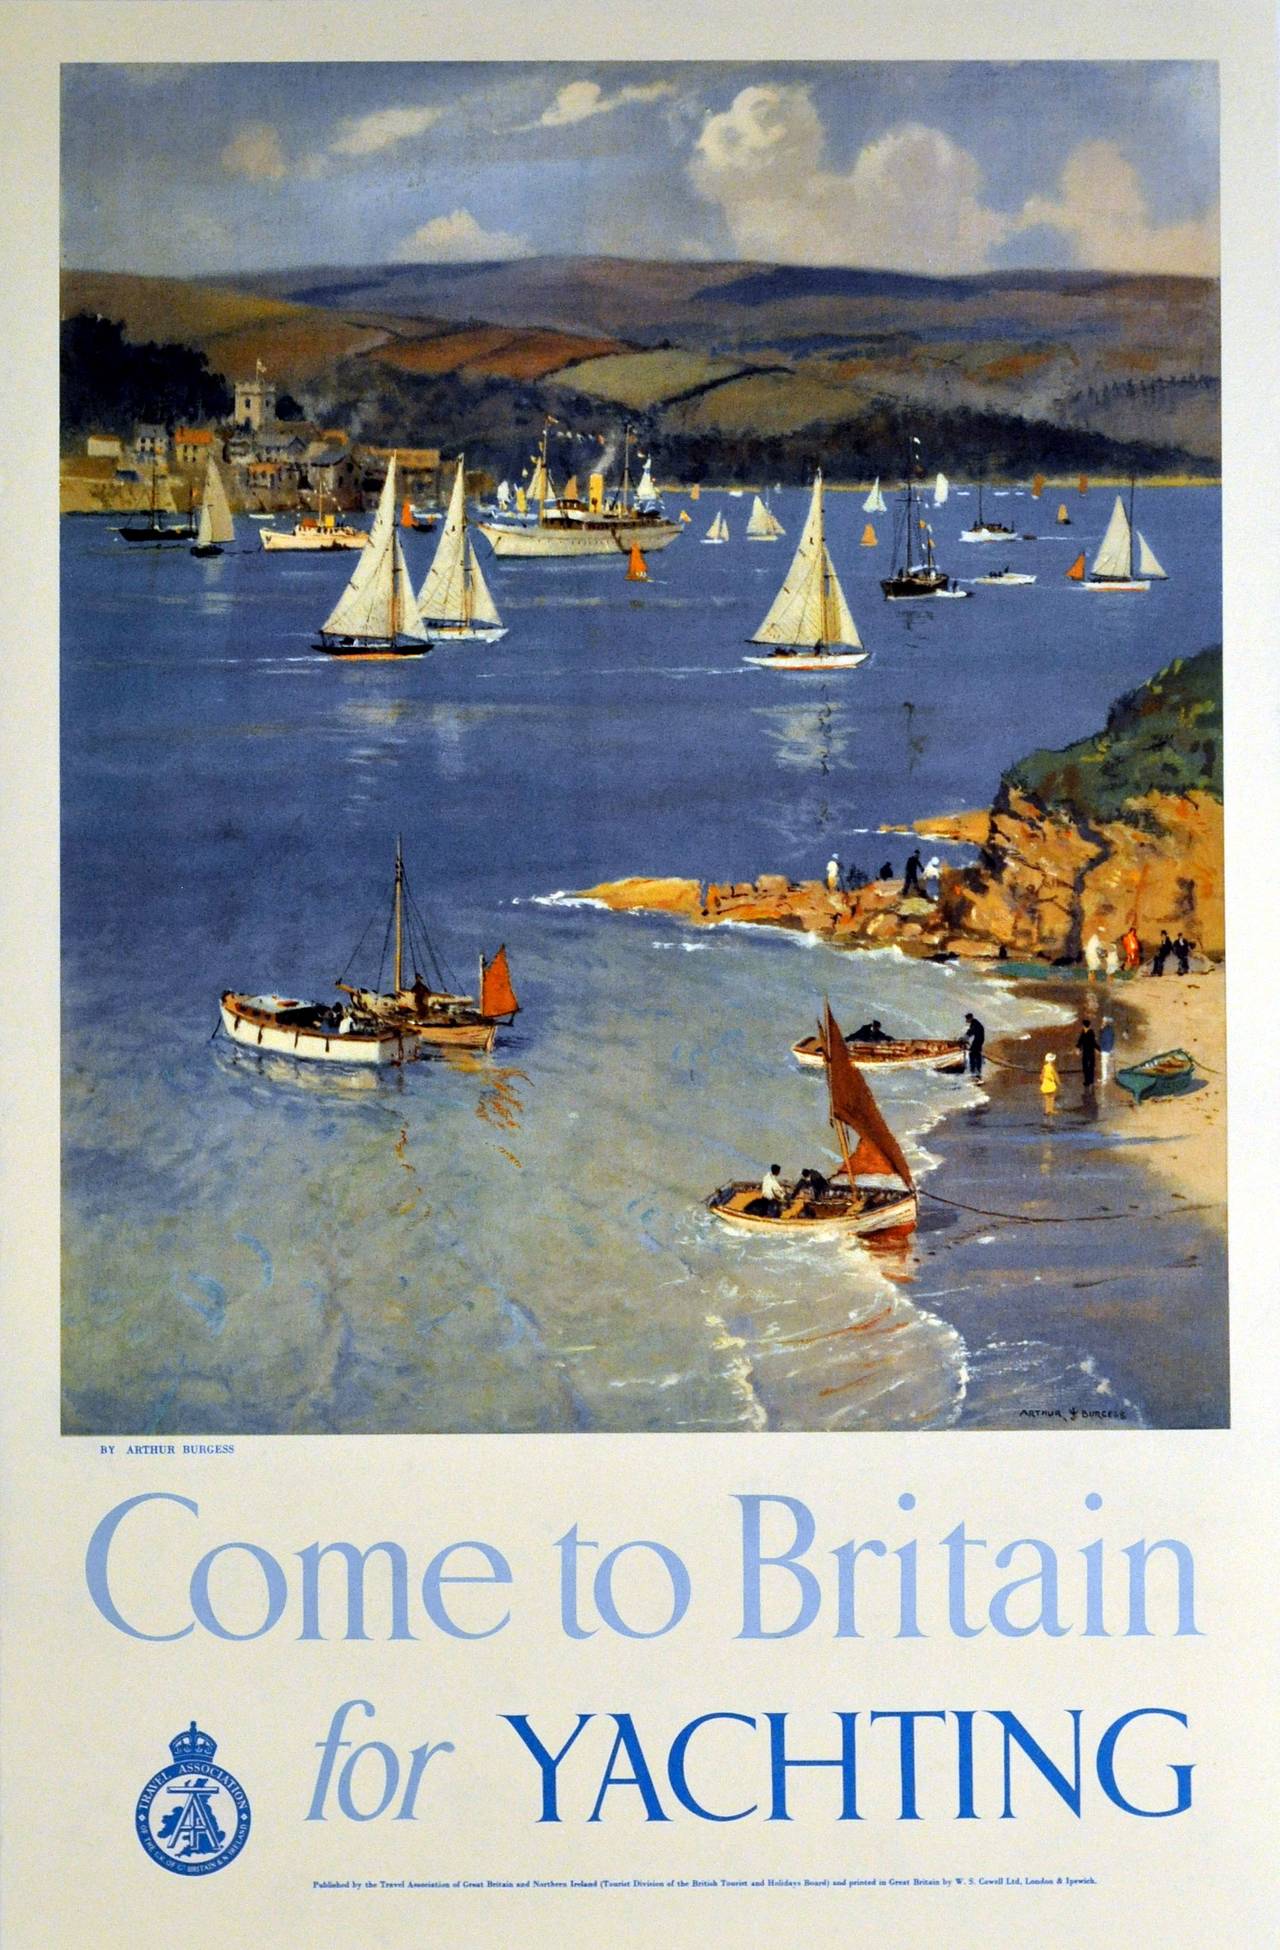 Affiche de voile vintage originale : Venez en Grande-Bretagne pour faire du yachting. Grande image panoramique de voiliers sur l'eau avec des collines en arrière-plan et des personnes sur une plage, œuvre d'Arthur Burgess (Arthur J. Wetherall